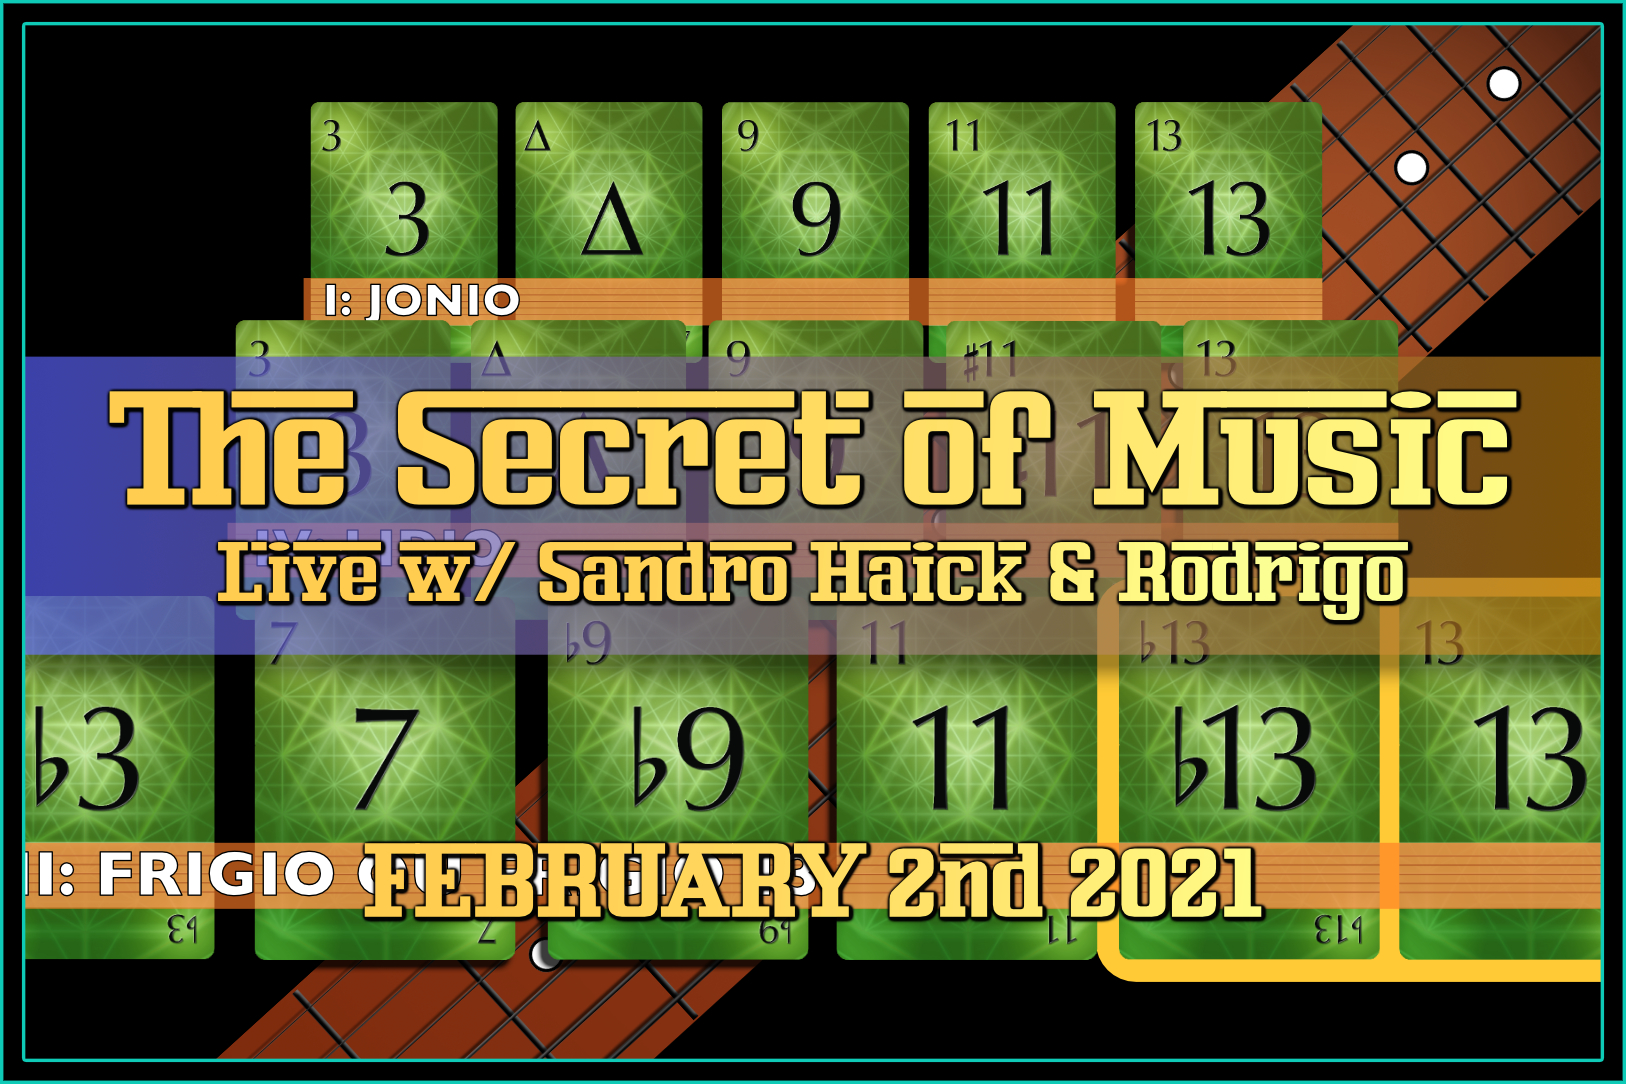 THE SECRET OF MUSIC LIVE WITH SANDRO & RODRIGO